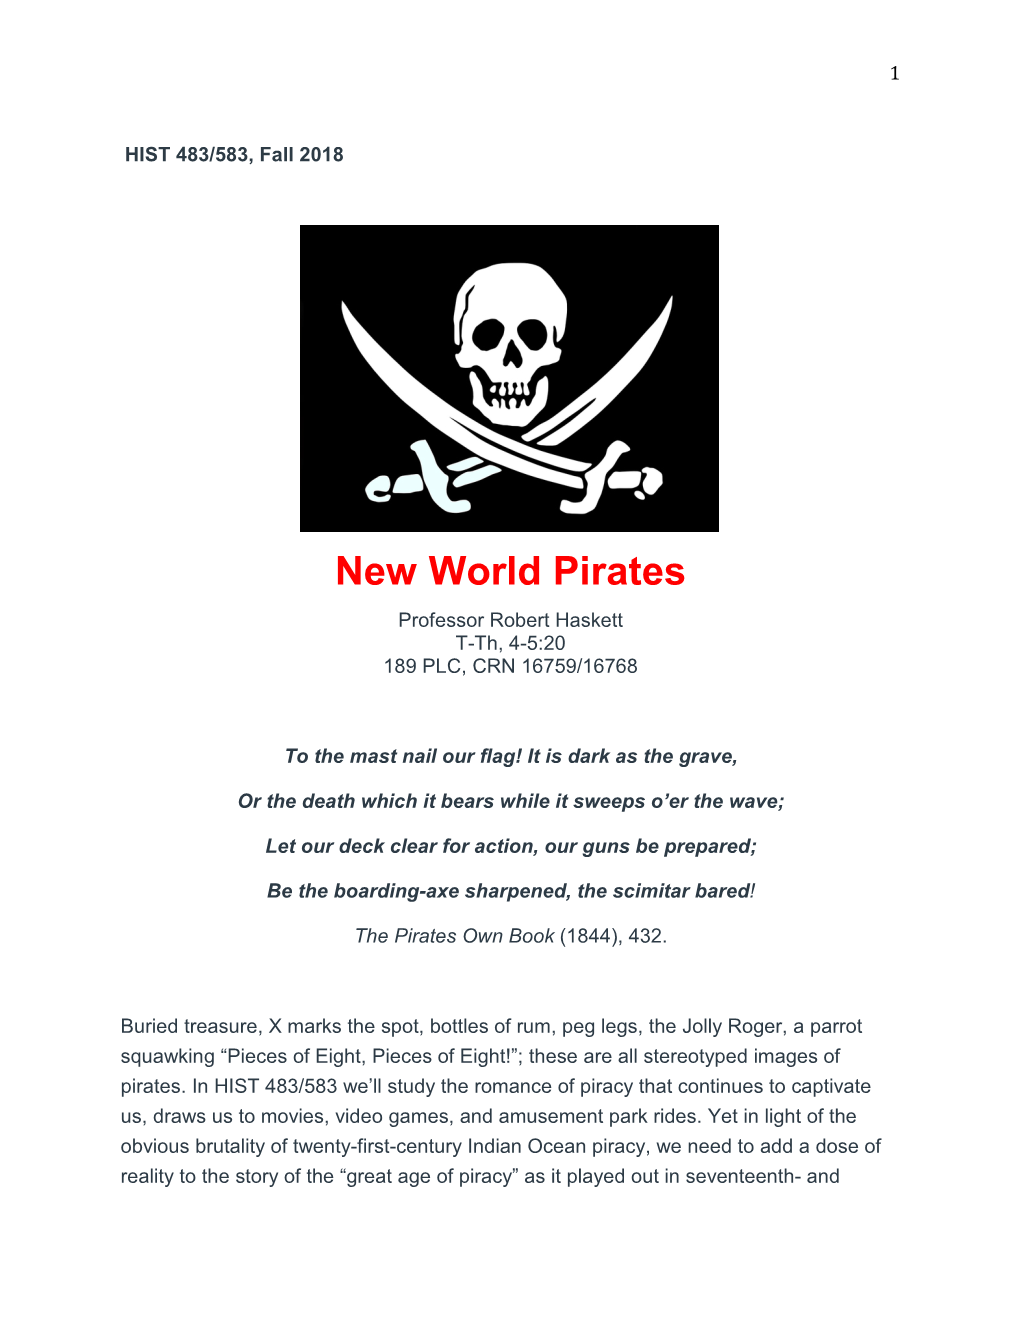 New World Pirates Professor Robert Haskett T-Th, 4-5:20 189 PLC, CRN 16759/16768